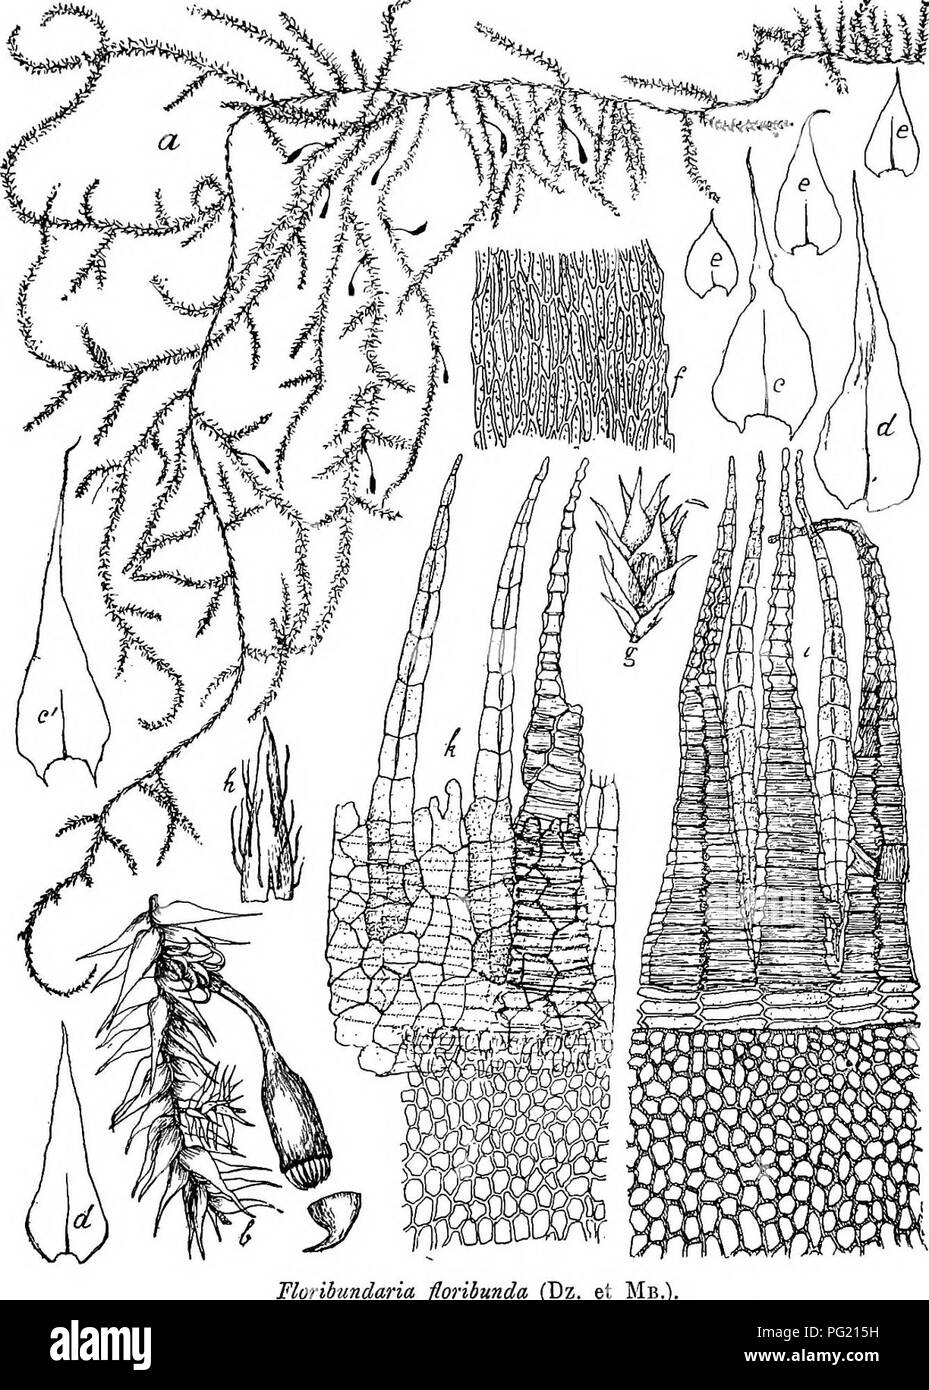 . Flore de Buitenzorg. Botany. 817 kriechend, oft meterlang ddnne Aeste eutlangwachsend, mehrfacli verzweigt, diinn, in unregelmassigen Abstiindeu wurzelnd, (Rhi- Fig. 146.. Florihundaria flon a. Habitusbild (natiirl. Grosse). b. Aststiick mit Sporogon . c. Blatt dcs Hauptstengels '/. c. Blatt am Sprossende des Haupt- stengels '/• d. Astblatter '/• (Dz. et Mb.). e. Griundastblattei- Y- f. Blattzellen —f-' g. &lt;^ Bllite V- h. Jugendliche Haube . i. Periston! dorsal gesehen. k. Desgl. voDtral gesehen -j^. zoiden glatt, in Buscheln, meist zu scheibenformigen Gebilden. Please note that these i Stock Photo